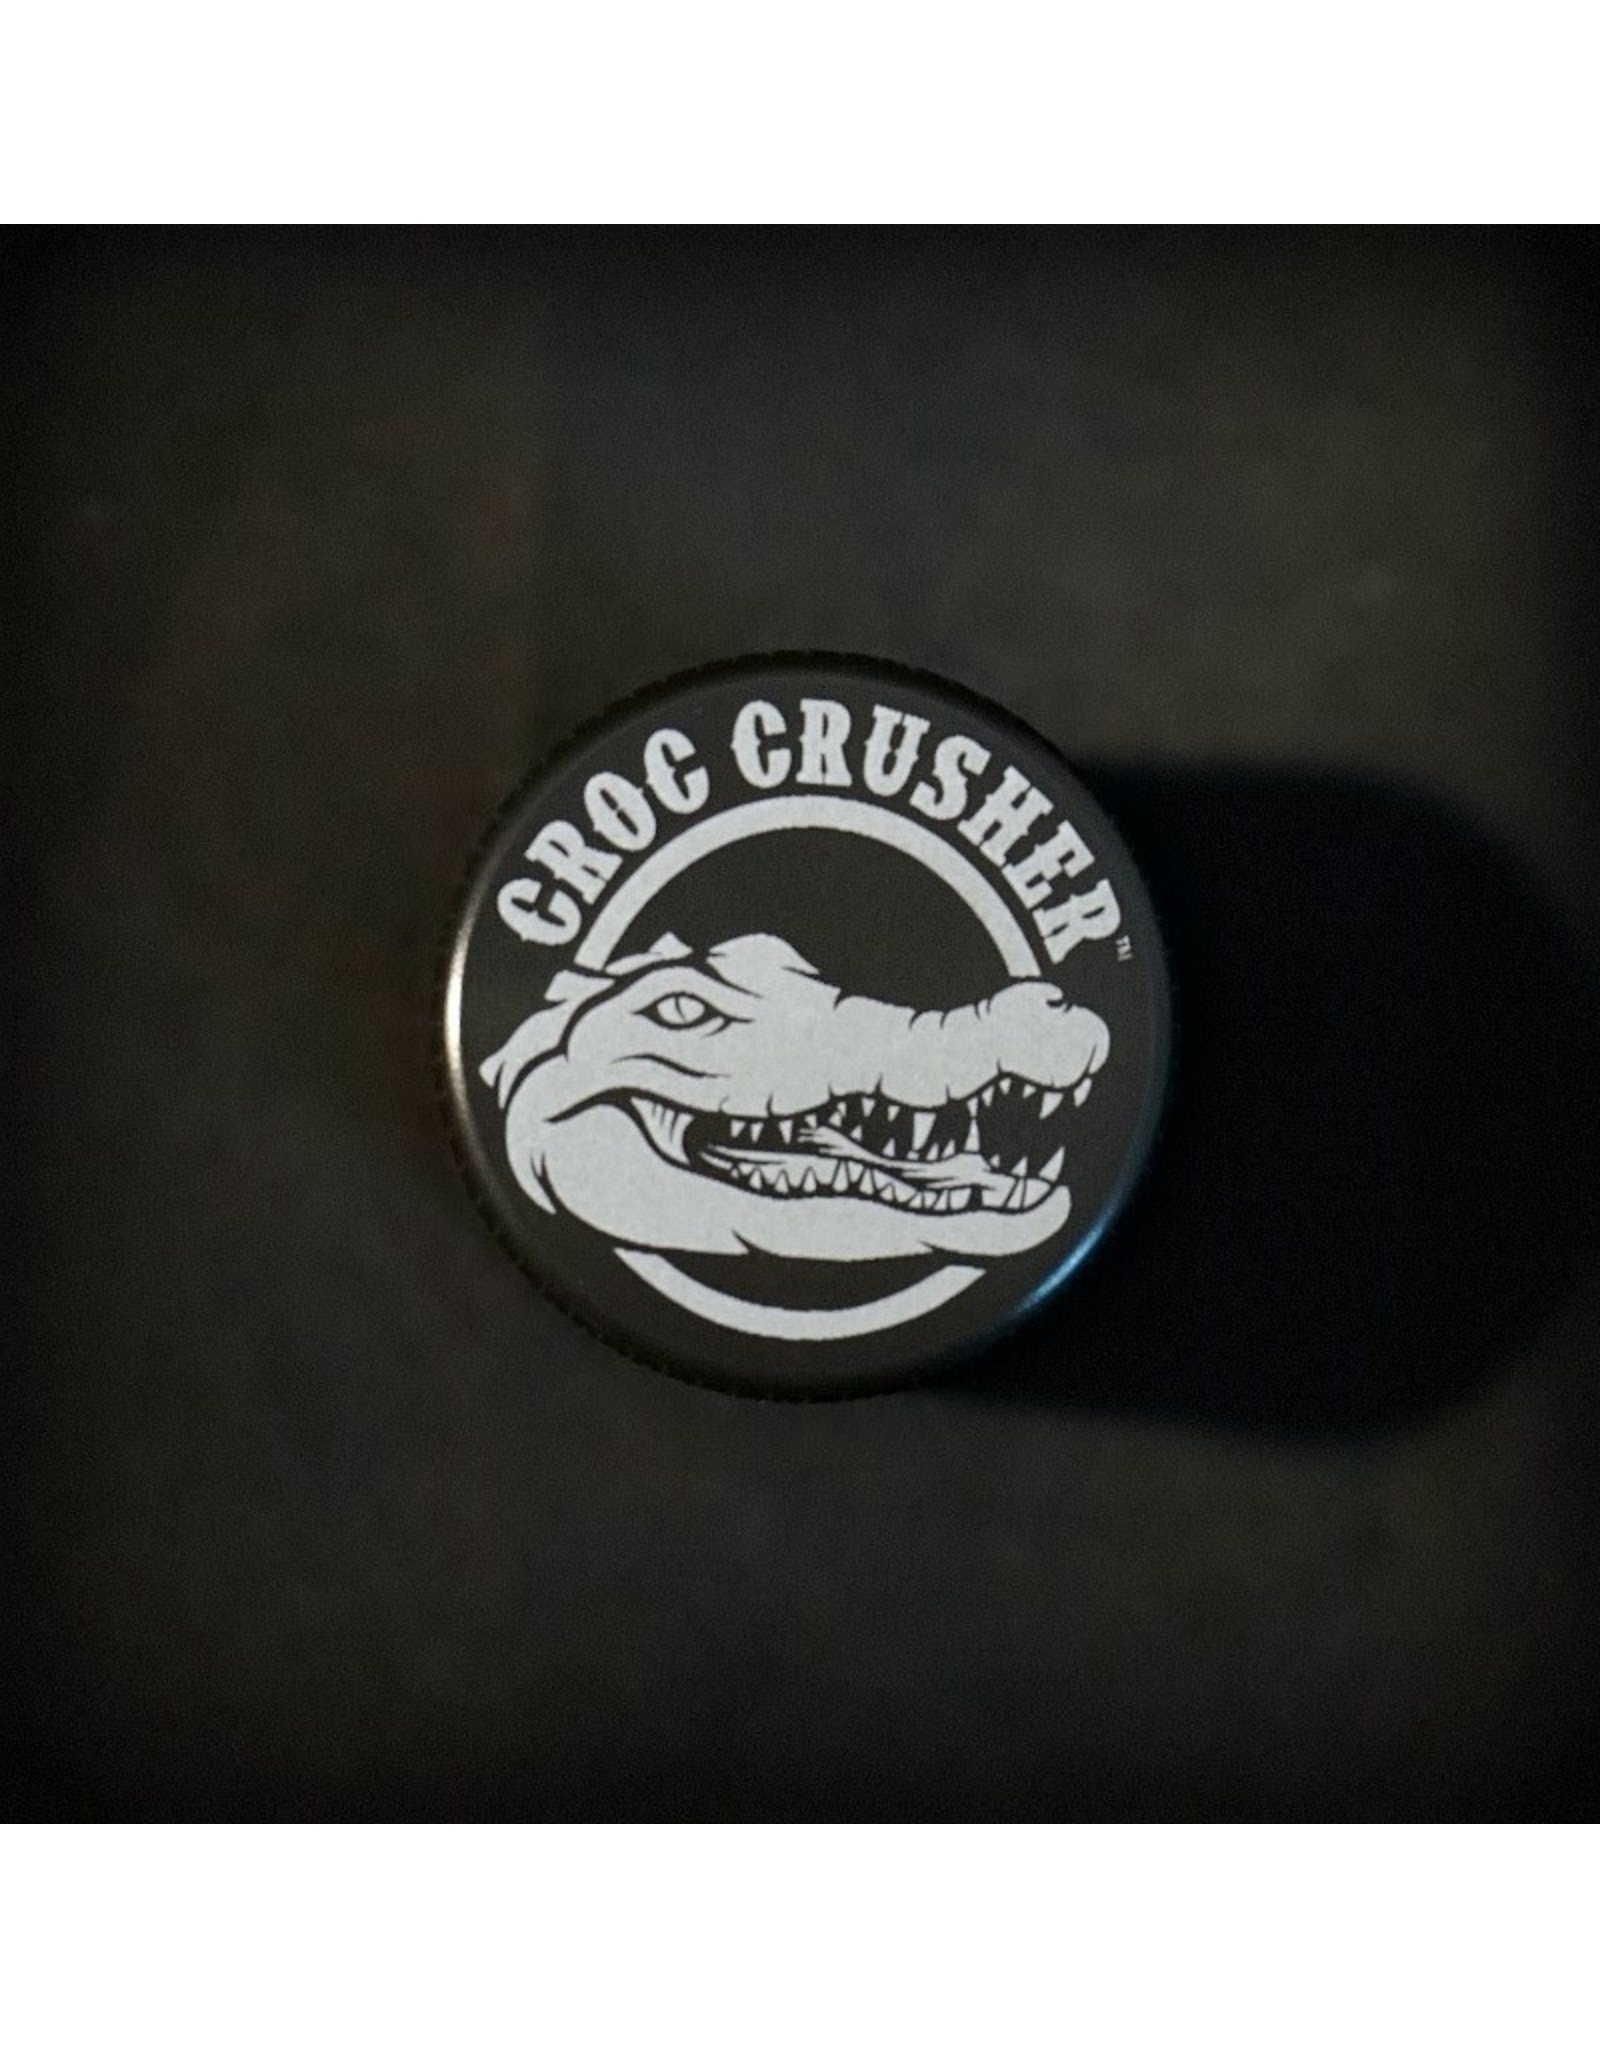 Croc Crusher Croc Crusher 1.2ÃƒÆ’Ã‚Â¢ÃƒÂ¢Ã¢â‚¬Å¡Ã‚Â¬Ãƒâ€šÃ‚Â³ 4pc ÃƒÆ’Ã‚Â¢ÃƒÂ¢Ã¢â‚¬Å¡Ã‚Â¬ÃƒÂ¢Ã¢â€šÂ¬Ã…â€œ Gray